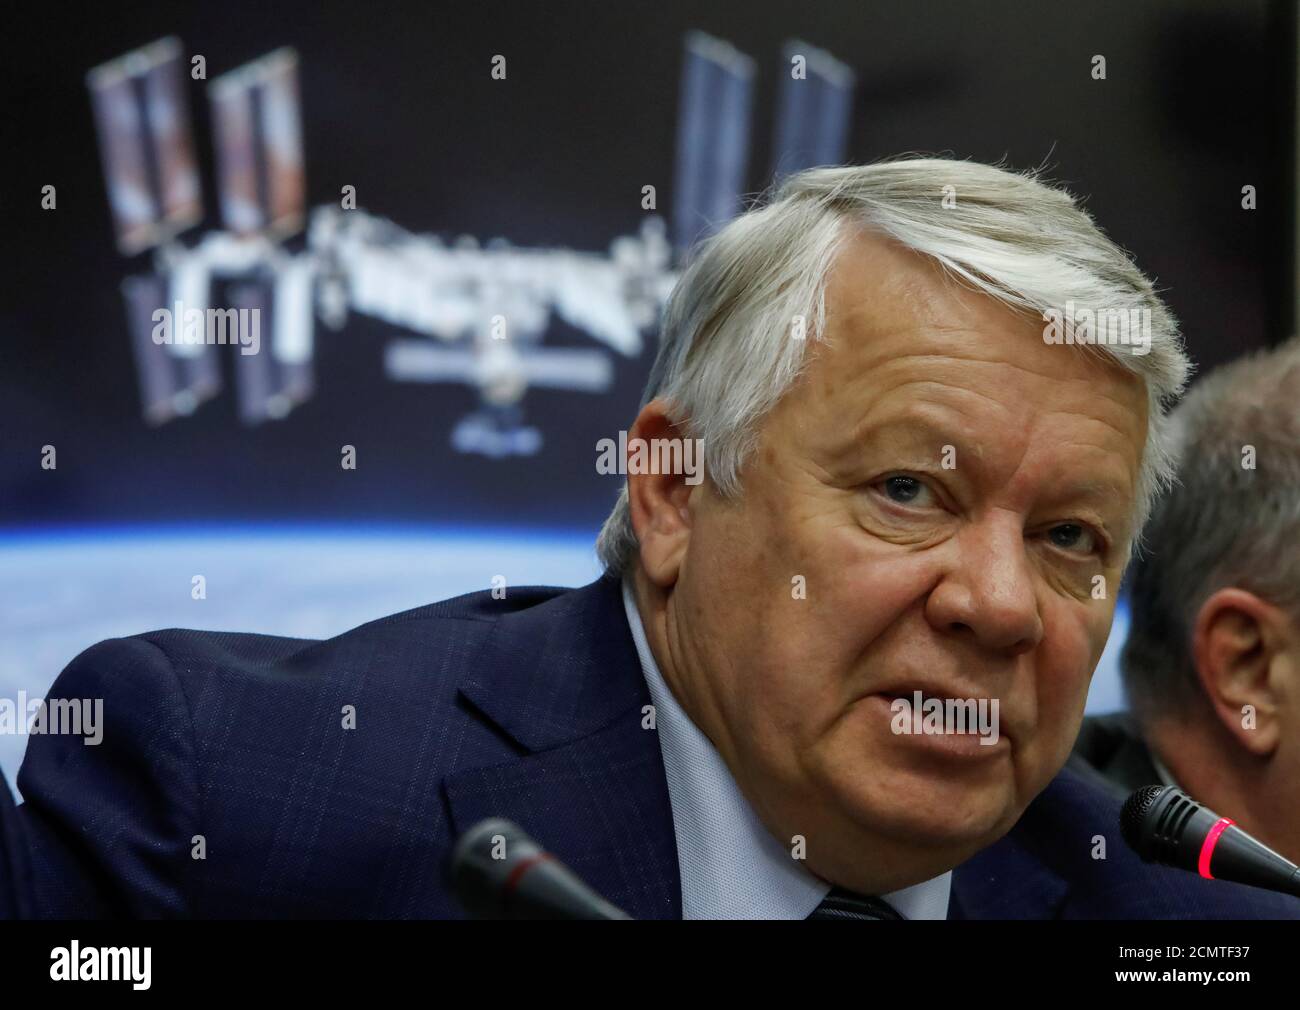 Oleg Skorobogatov, jefe de la comisión investigadora, habla en una conferencia de prensa sobre los resultados de la investigación sobre el fallido lanzamiento del cohete Soyuz el 11 de octubre, en el Centro Ruso de Control de Misiones de Korolev, en las afueras de Moscú, Rusia, el 1 de noviembre de 2018. REUTERS/Sergei Karpukhin Foto de stock